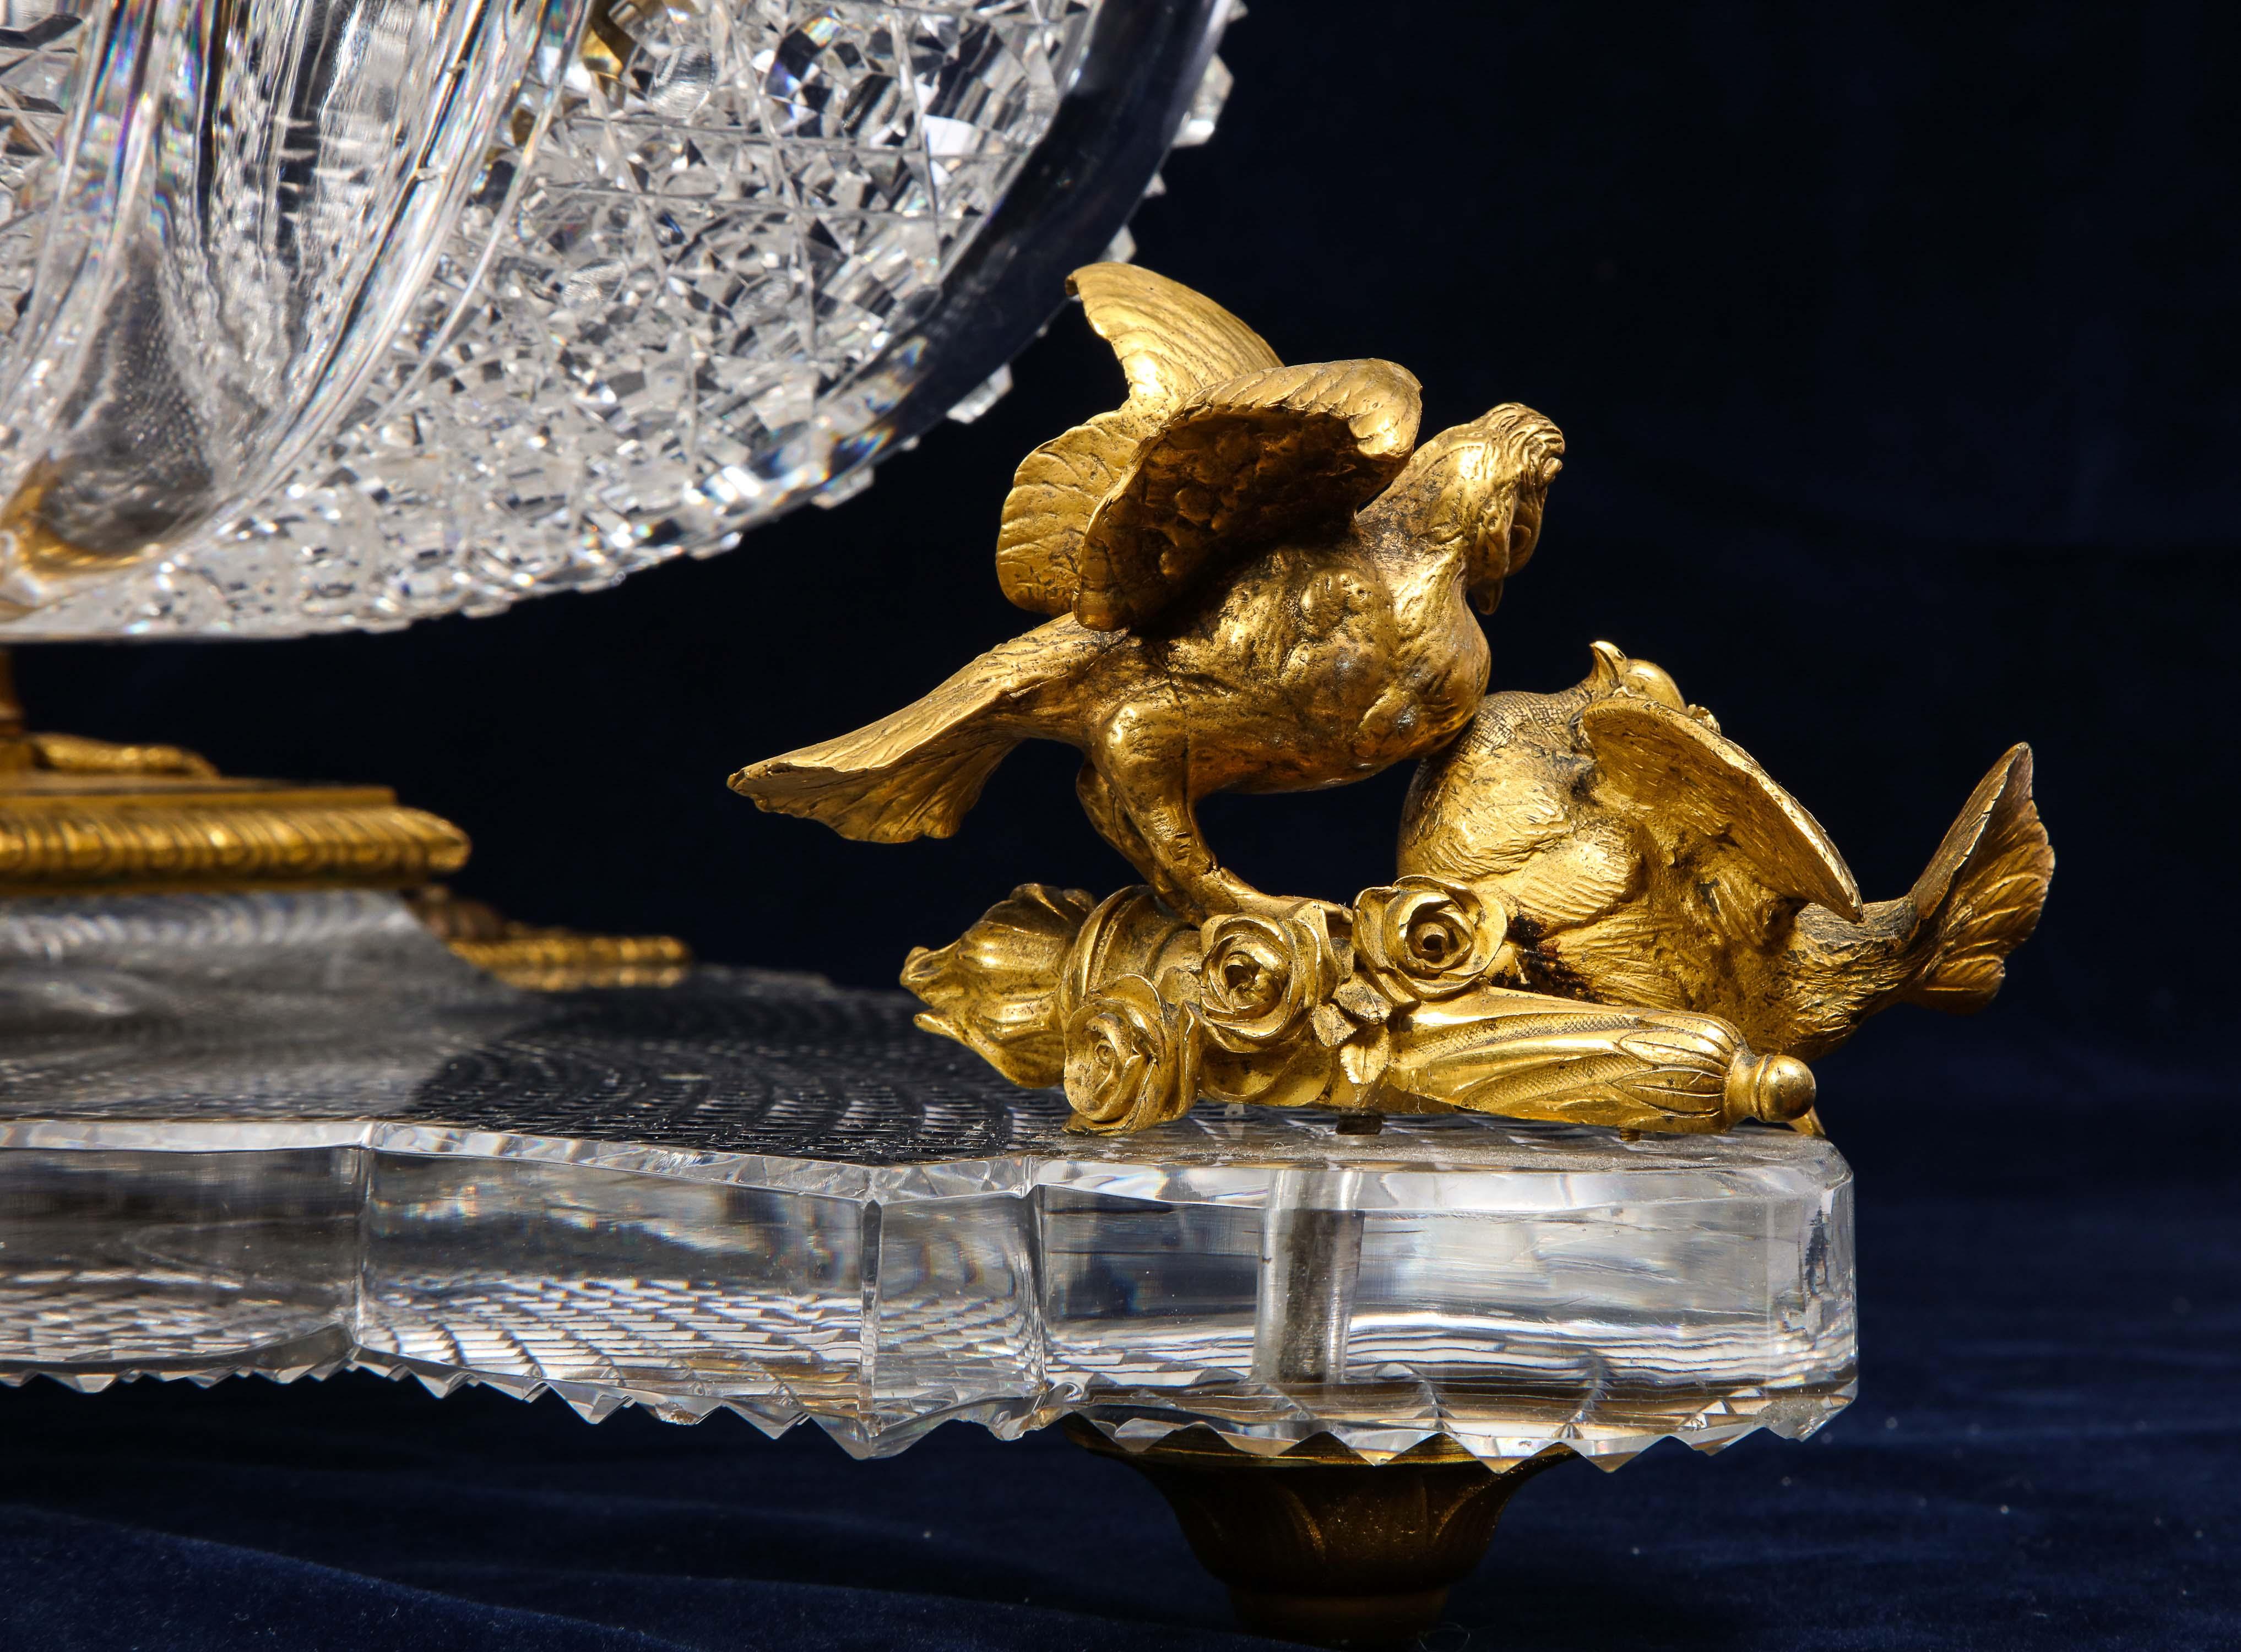 Bronze Hand-Diamond Cut Crystal & Ormolu Mounted Baccarat Centerpiece/Surtout de Table